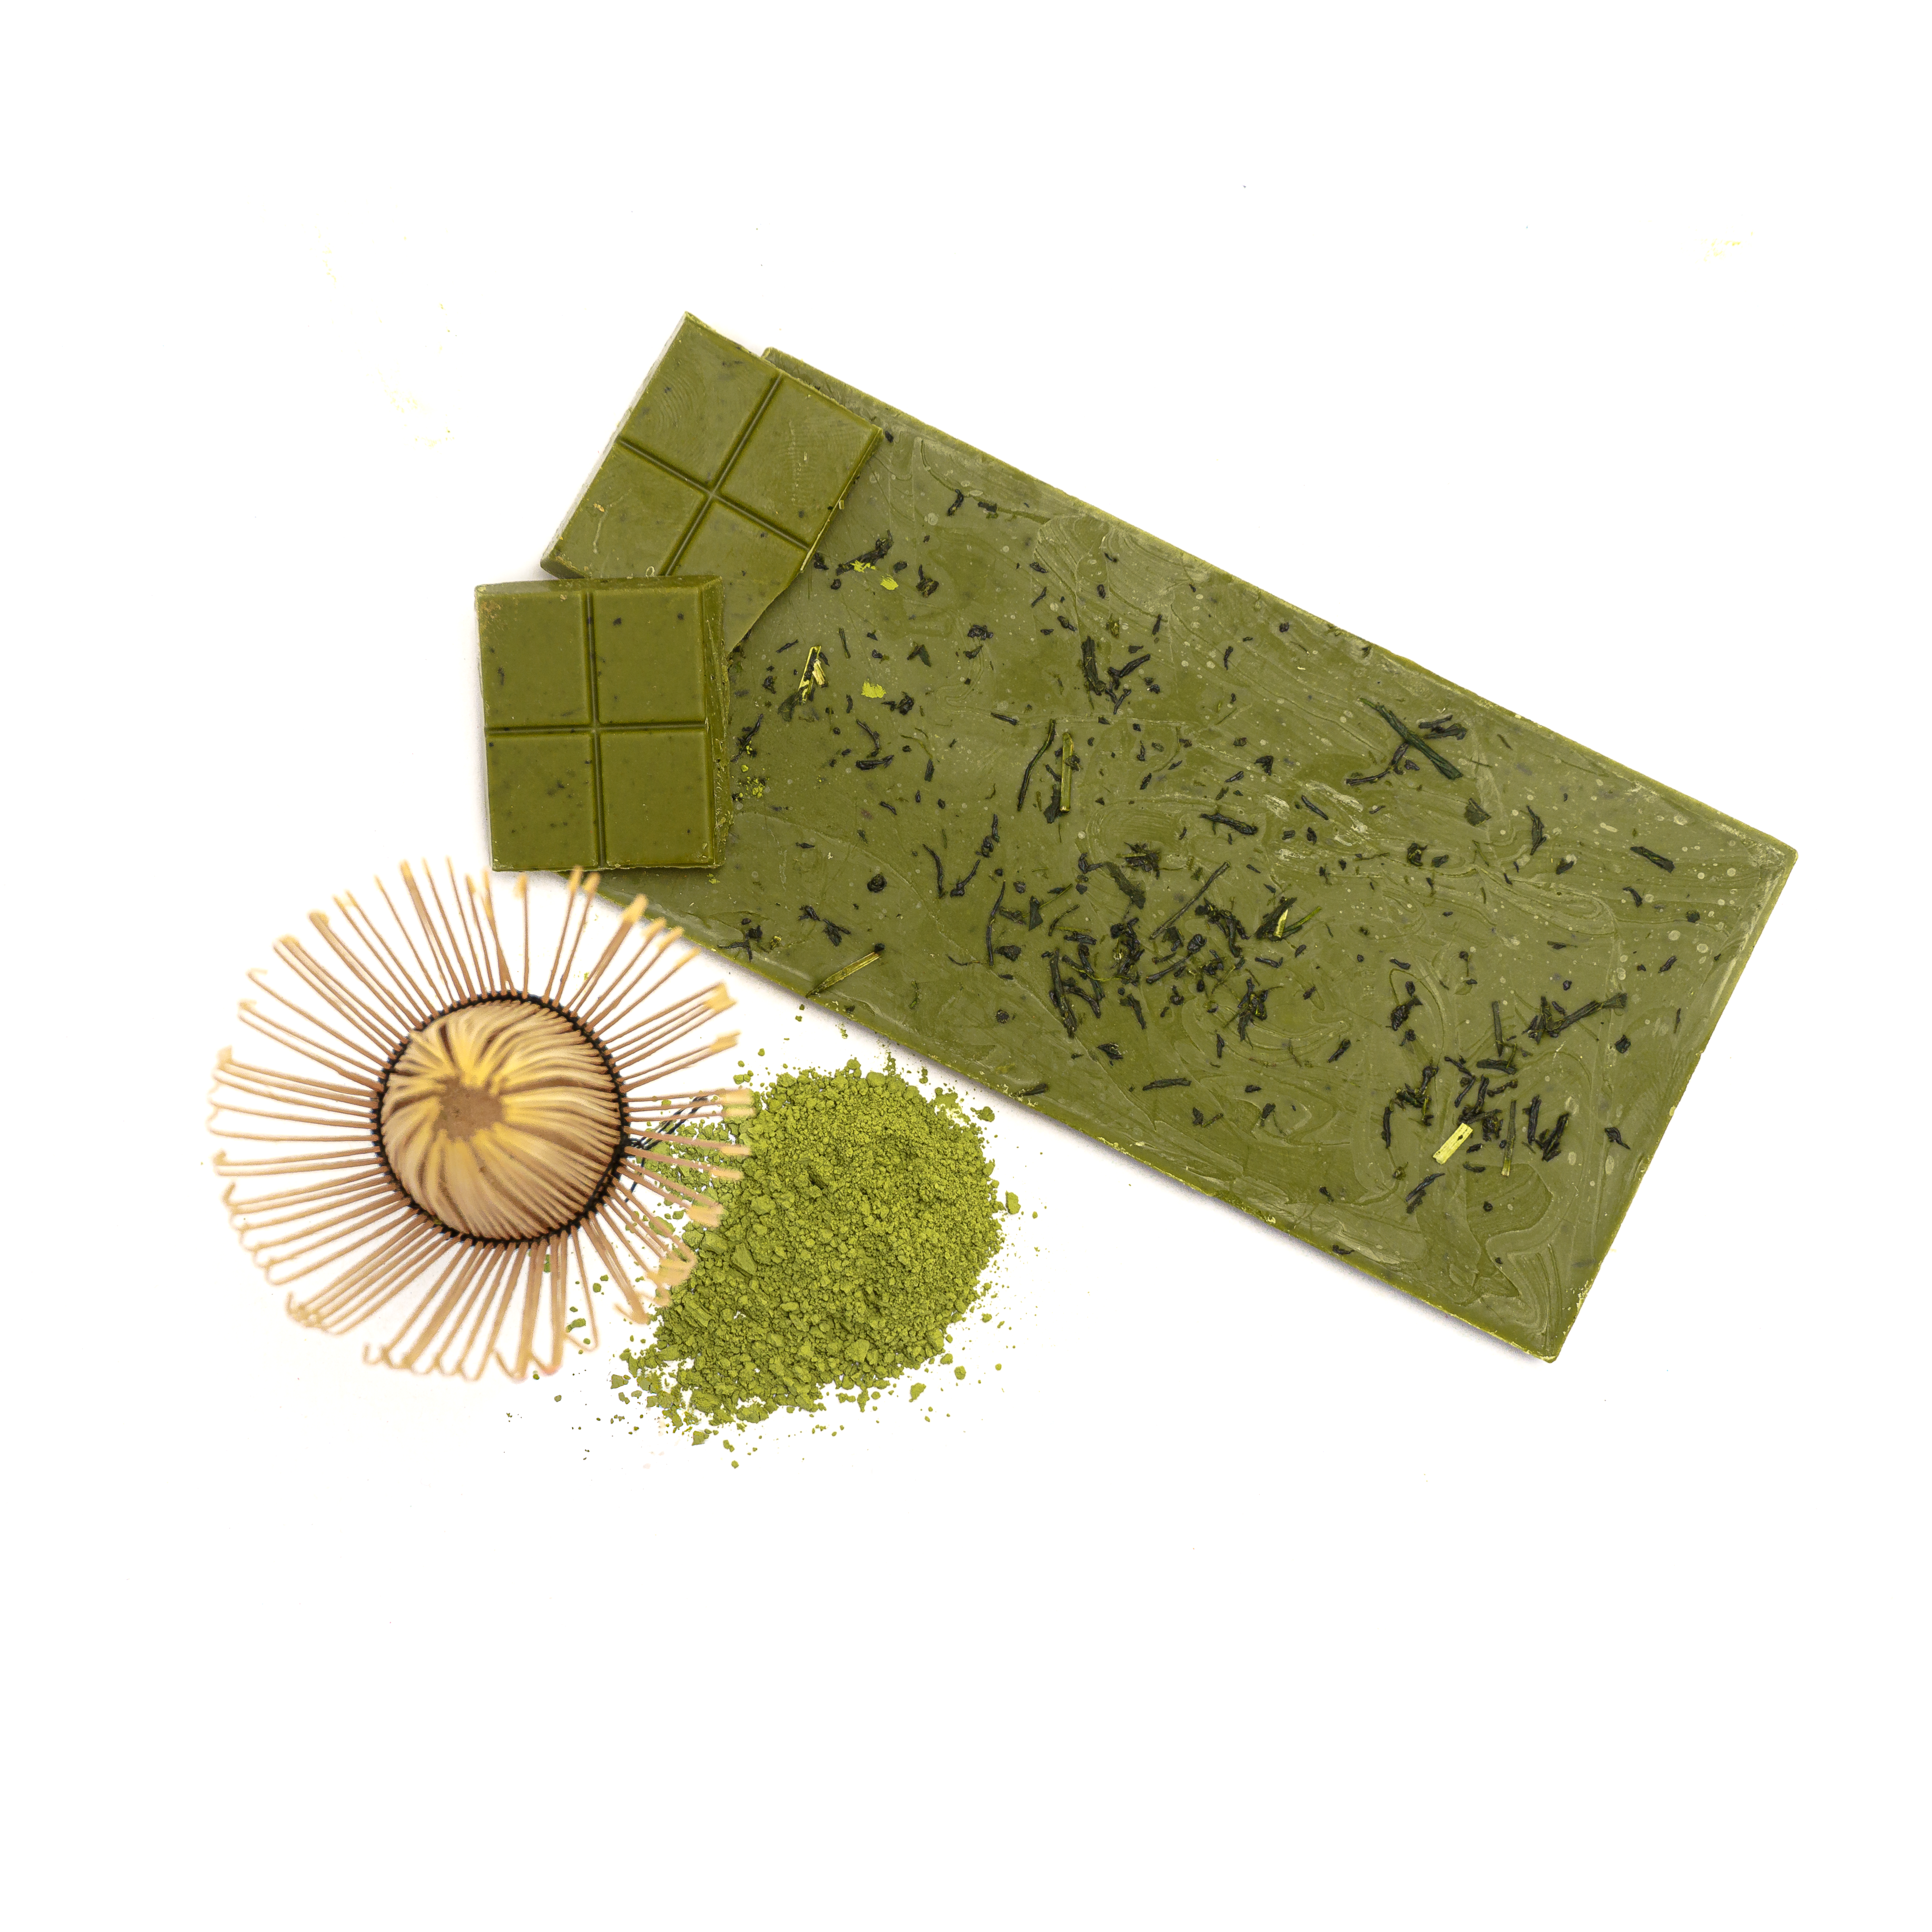 KEIKO Matcha Classic White Chocolate with Green Tea, organic